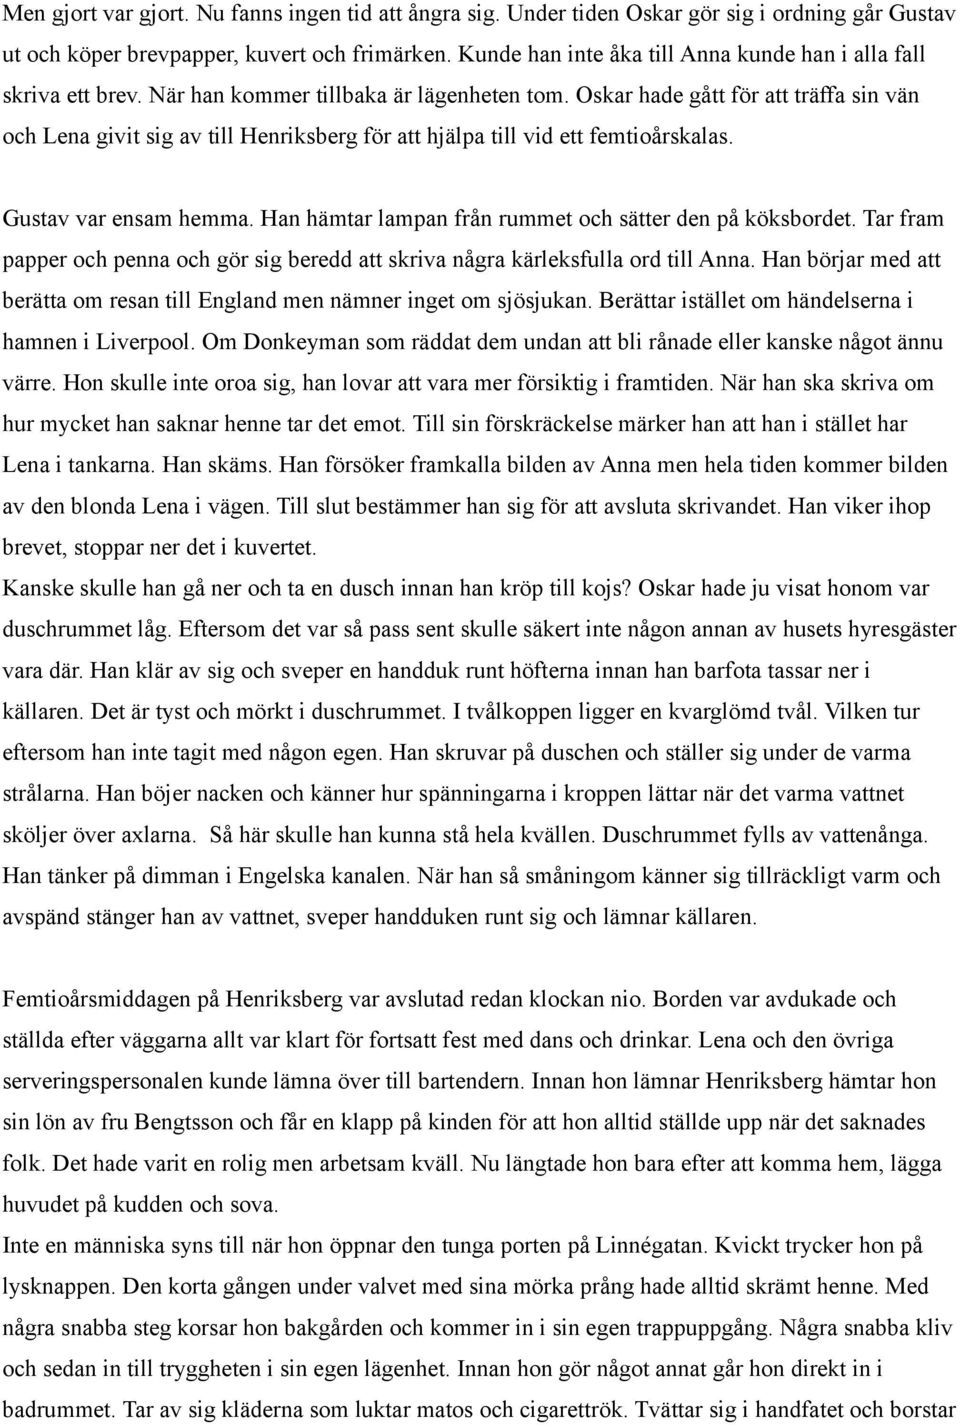 Sailors grave. Änkefru Anna Andersson del II eller vad som egentligen hände  44 sidor. Gunnar Ljunggren - PDF Free Download